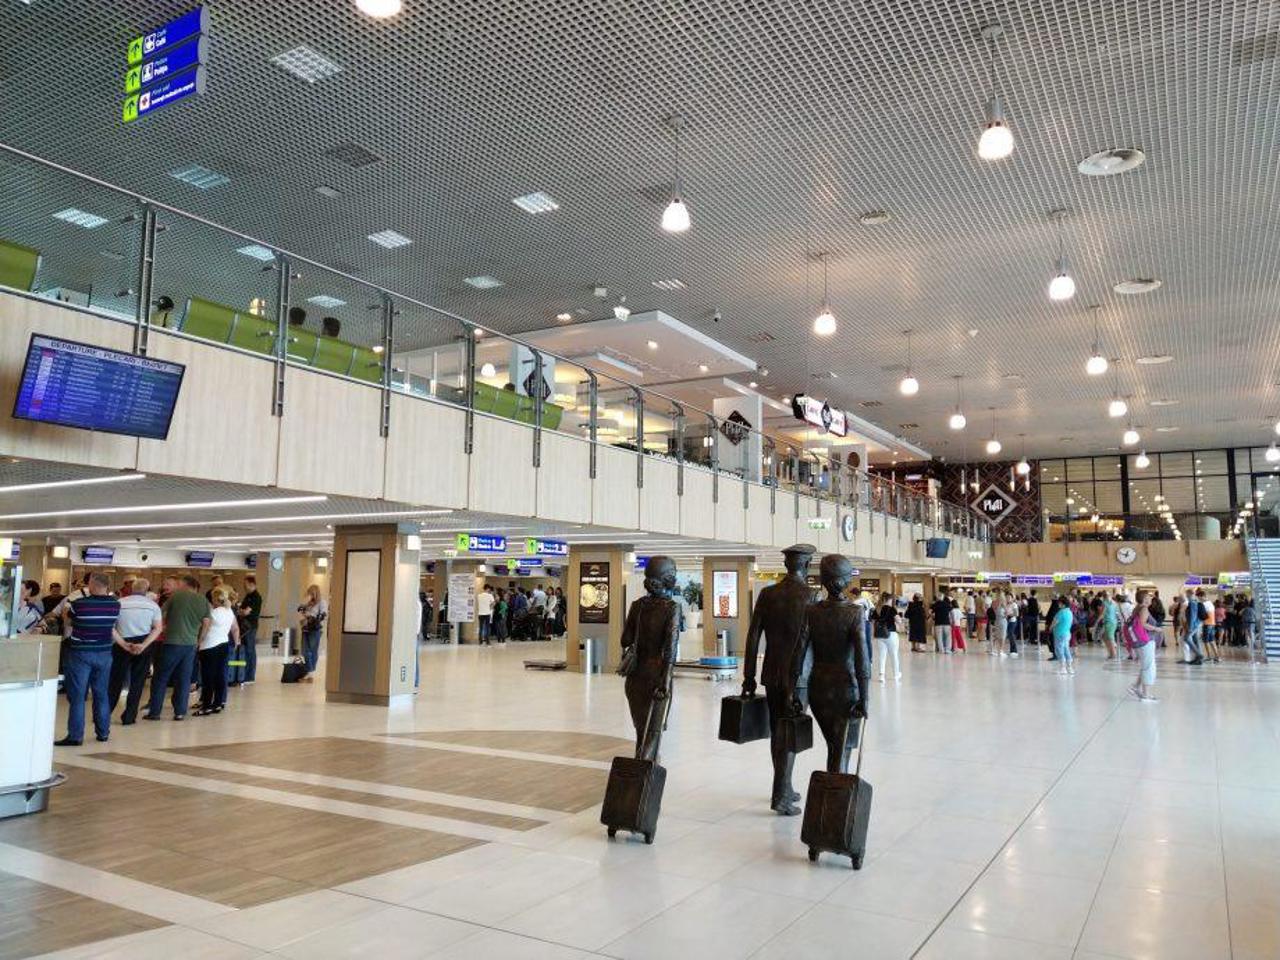 Reguli mai stricte la intrarea în aeroportul Chișinău. Opiniile oamenilor despre noile restricții